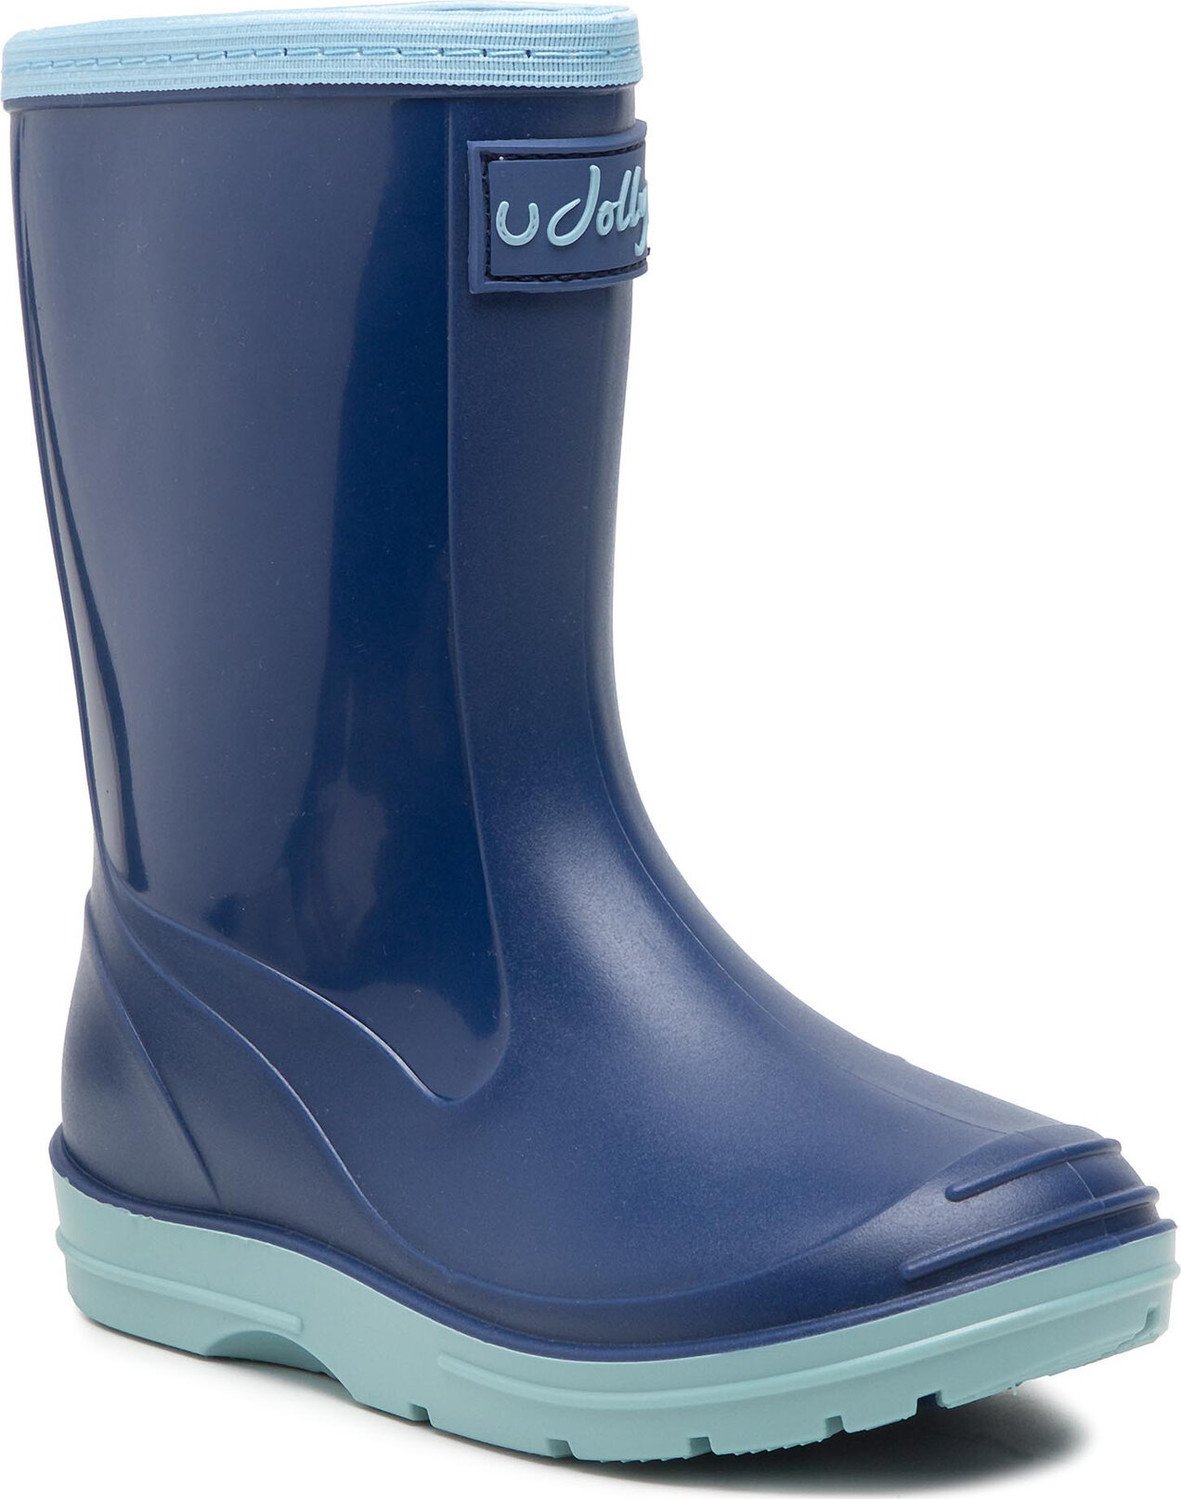 Holínky Horka Rainboots Pvc 146381 Blue